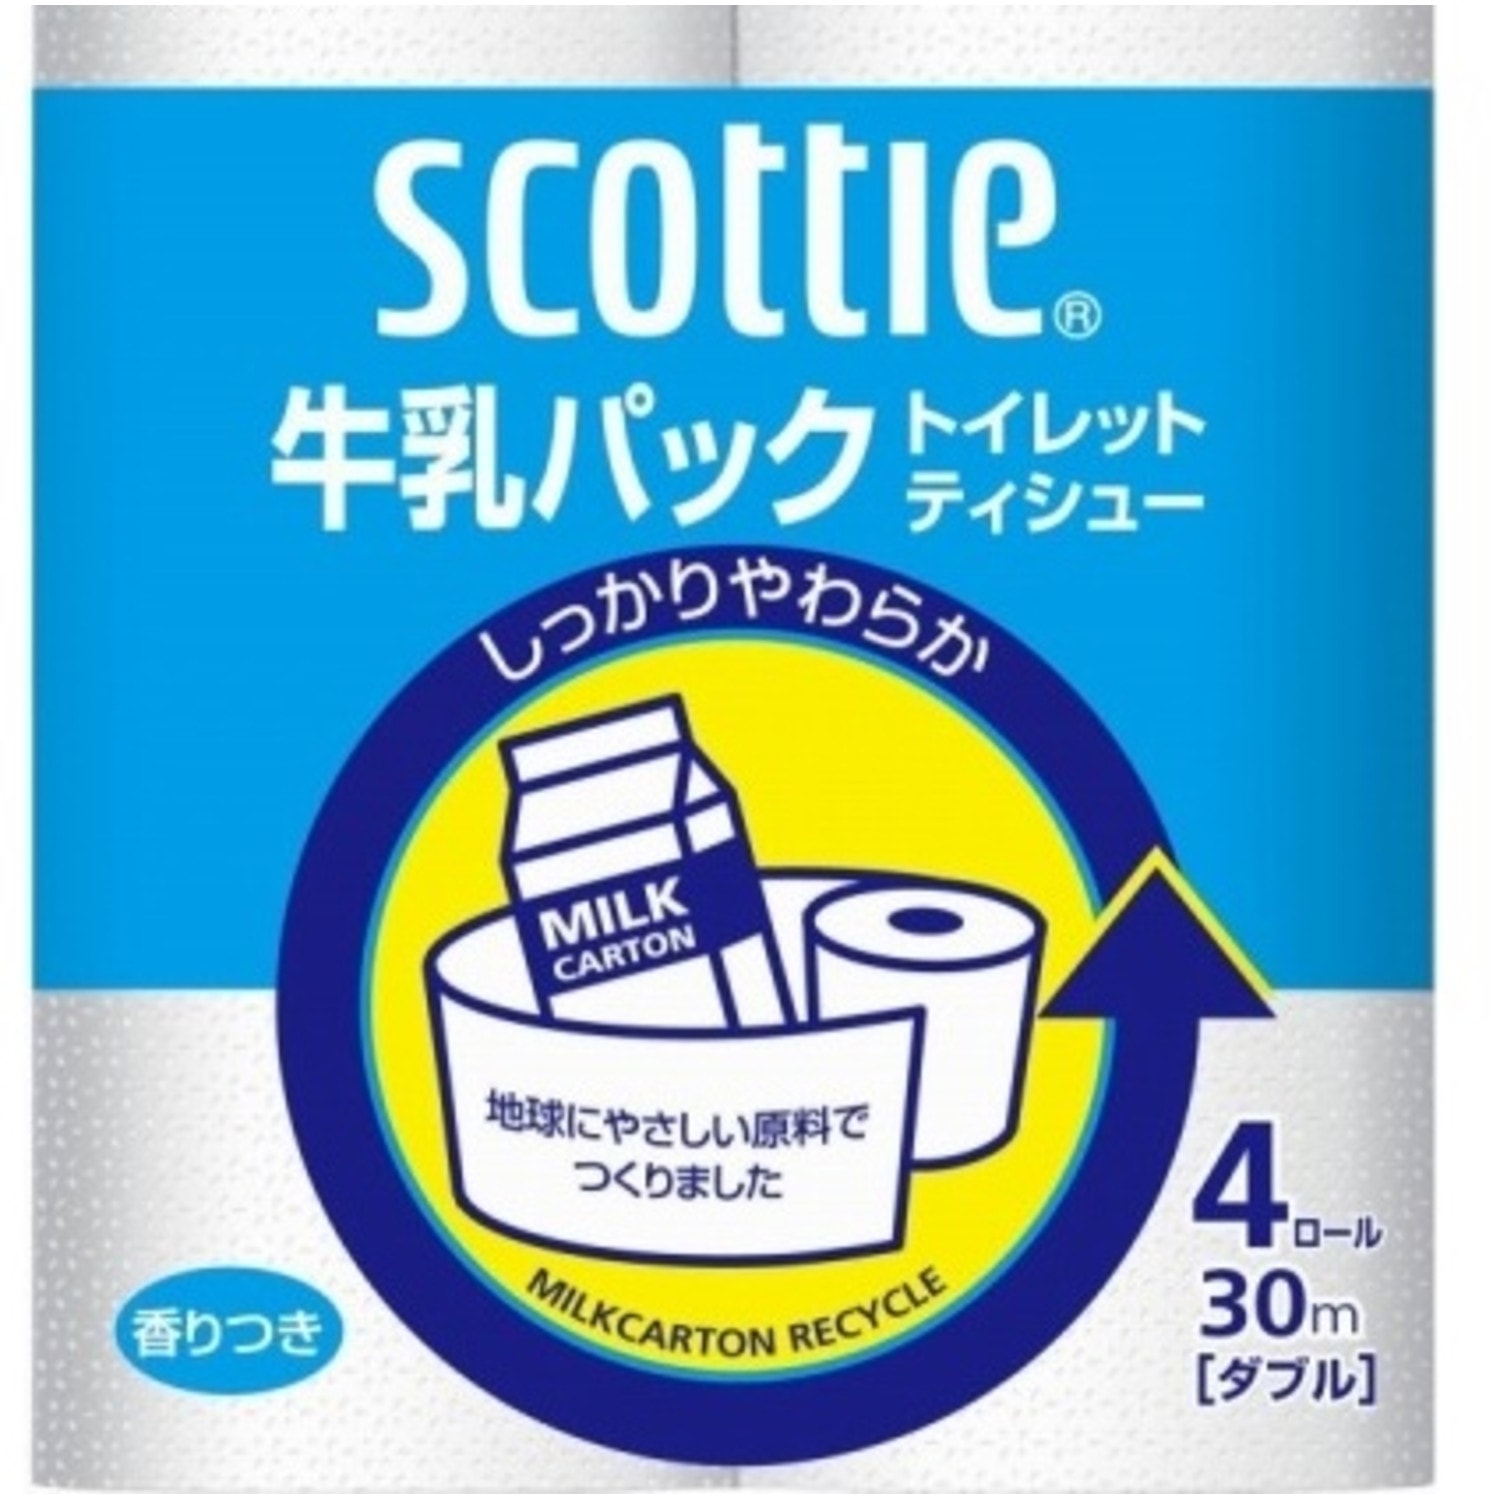 Nippon Paper Crecia Co., Ltd. Туалетная бумага из переработанной целлюлозы, с легким ароматом «Scottie», двухслойная, 4х30 м./ 277208